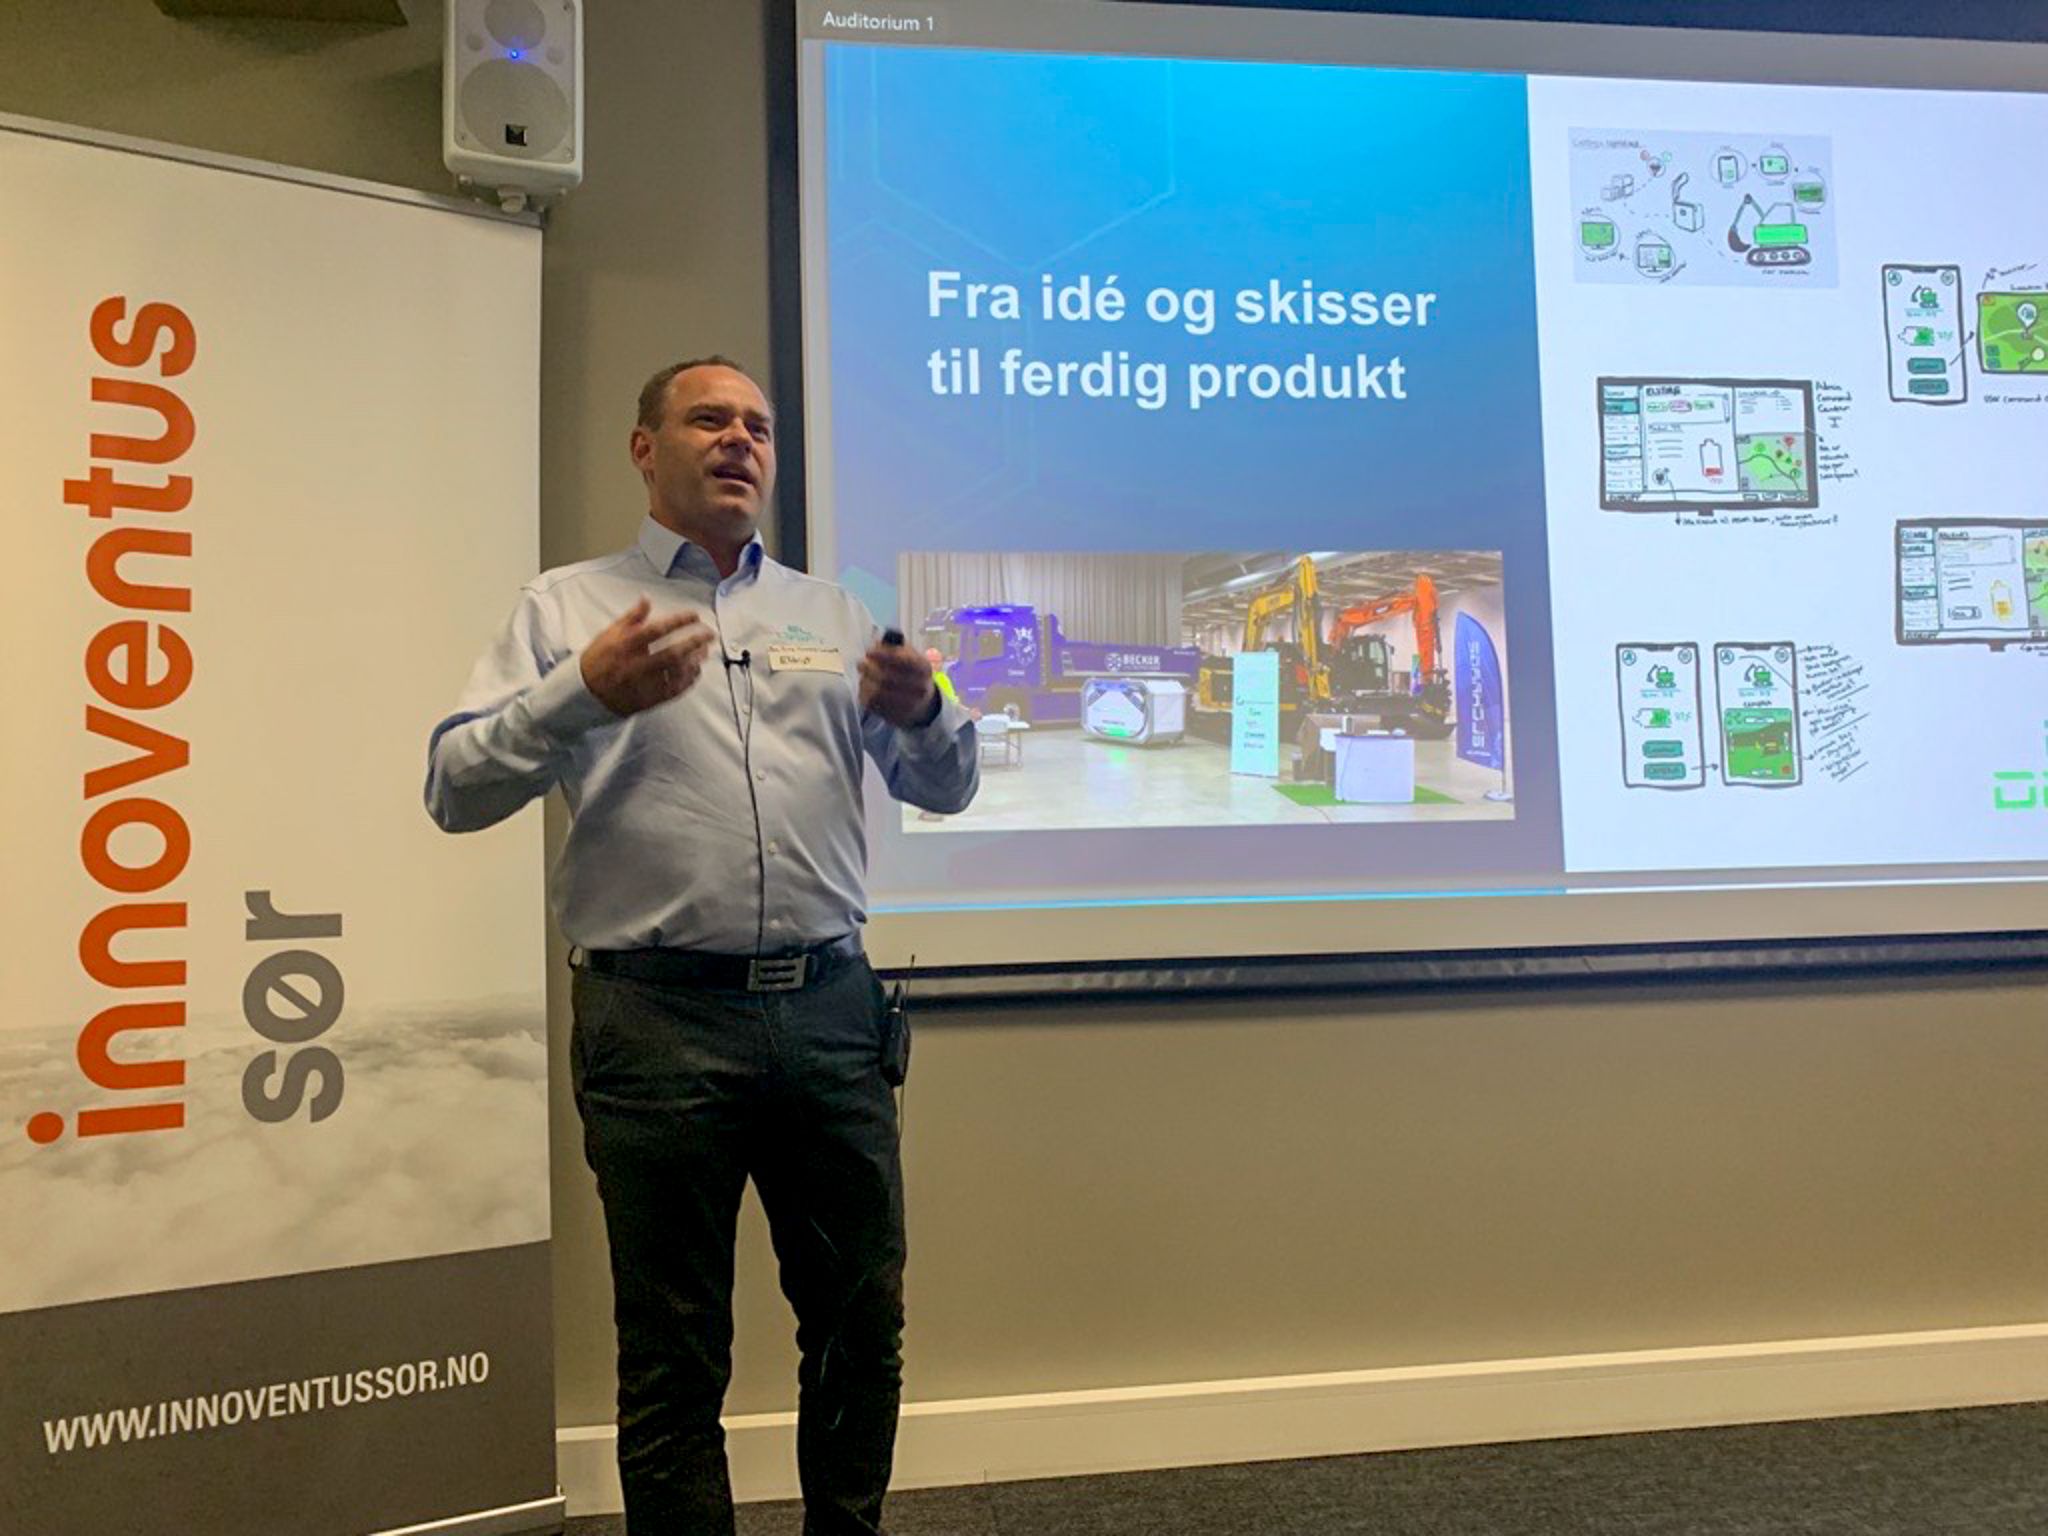 Jon Arne Hammersmark CEO i Eldrift presenterer selskapet under Pitch Party Sør